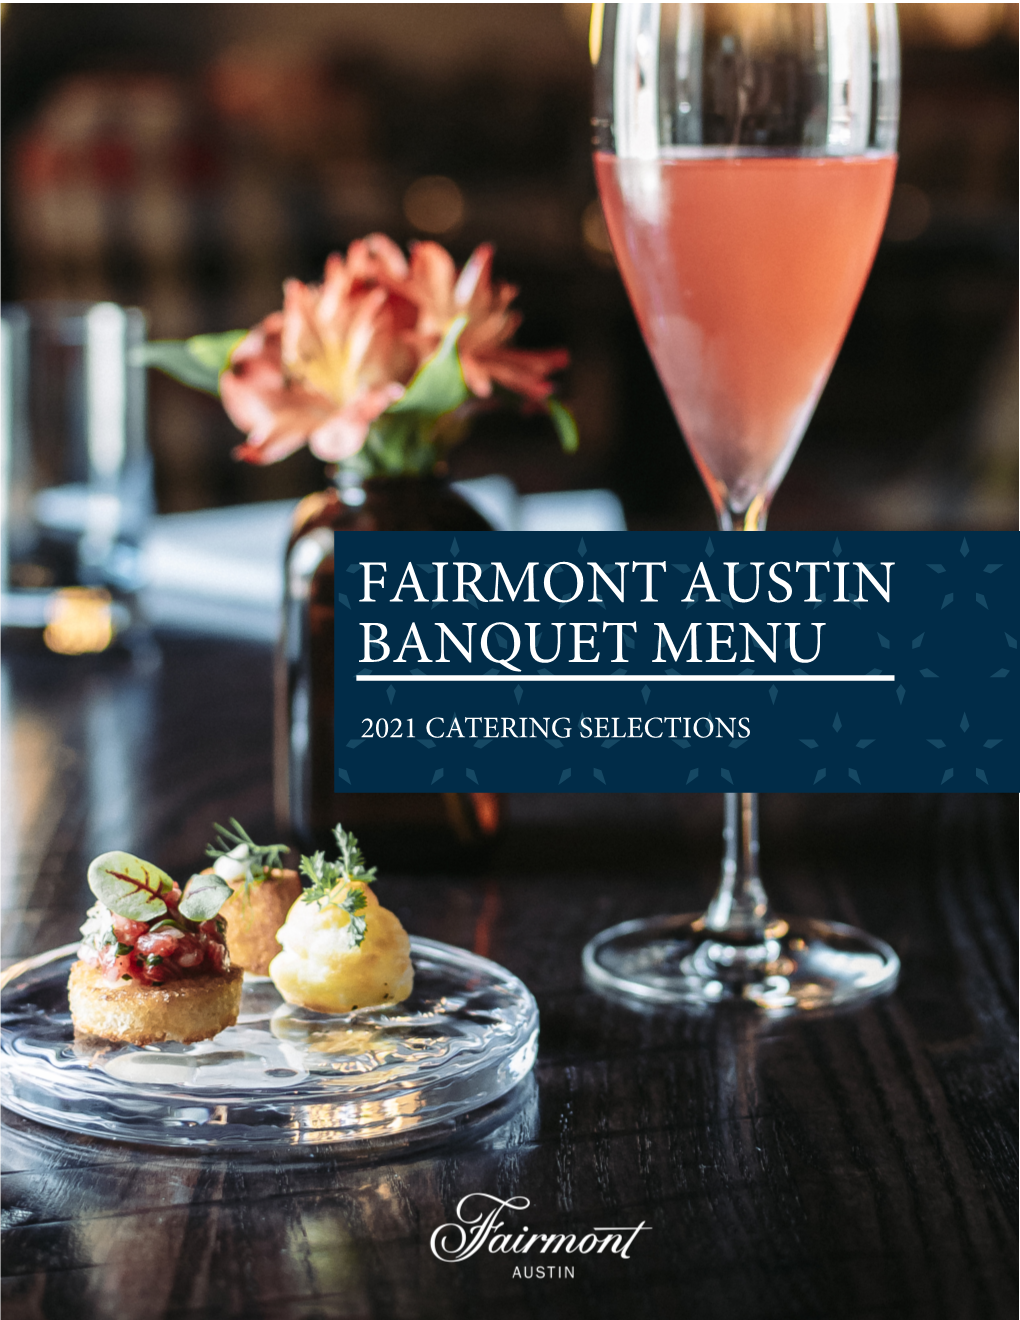 Fairmont Austin Banquet Menu